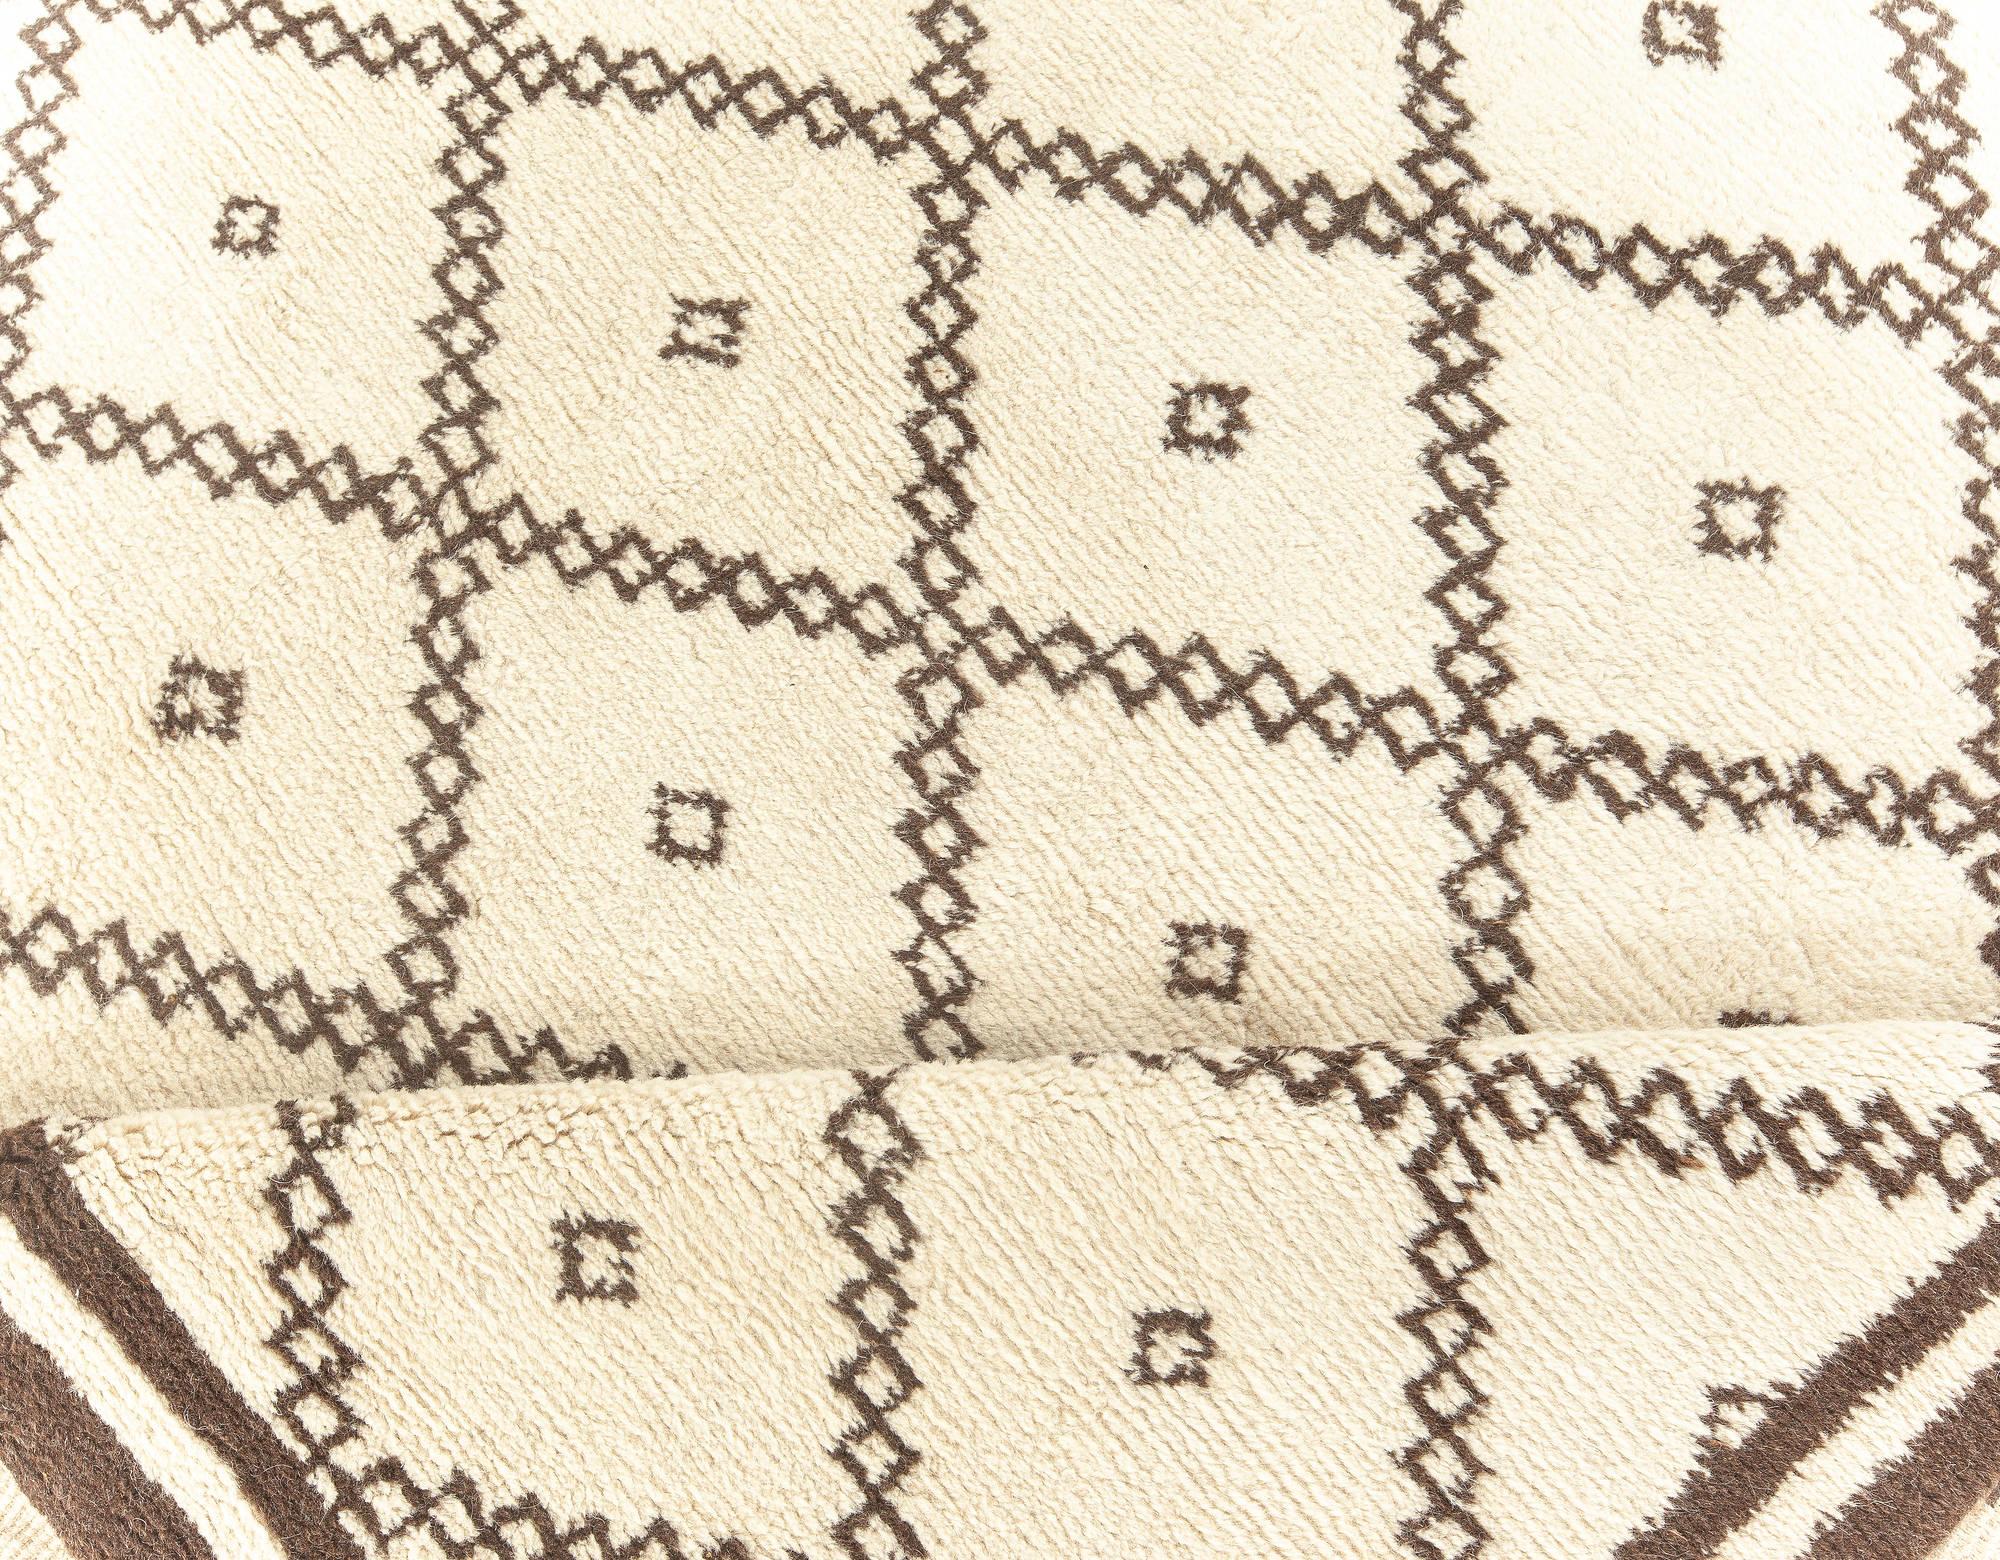 Collection Doris Leslie Blau tapis moderne de style tribal marocain beige, marron, fait main.
Taille : 7'4